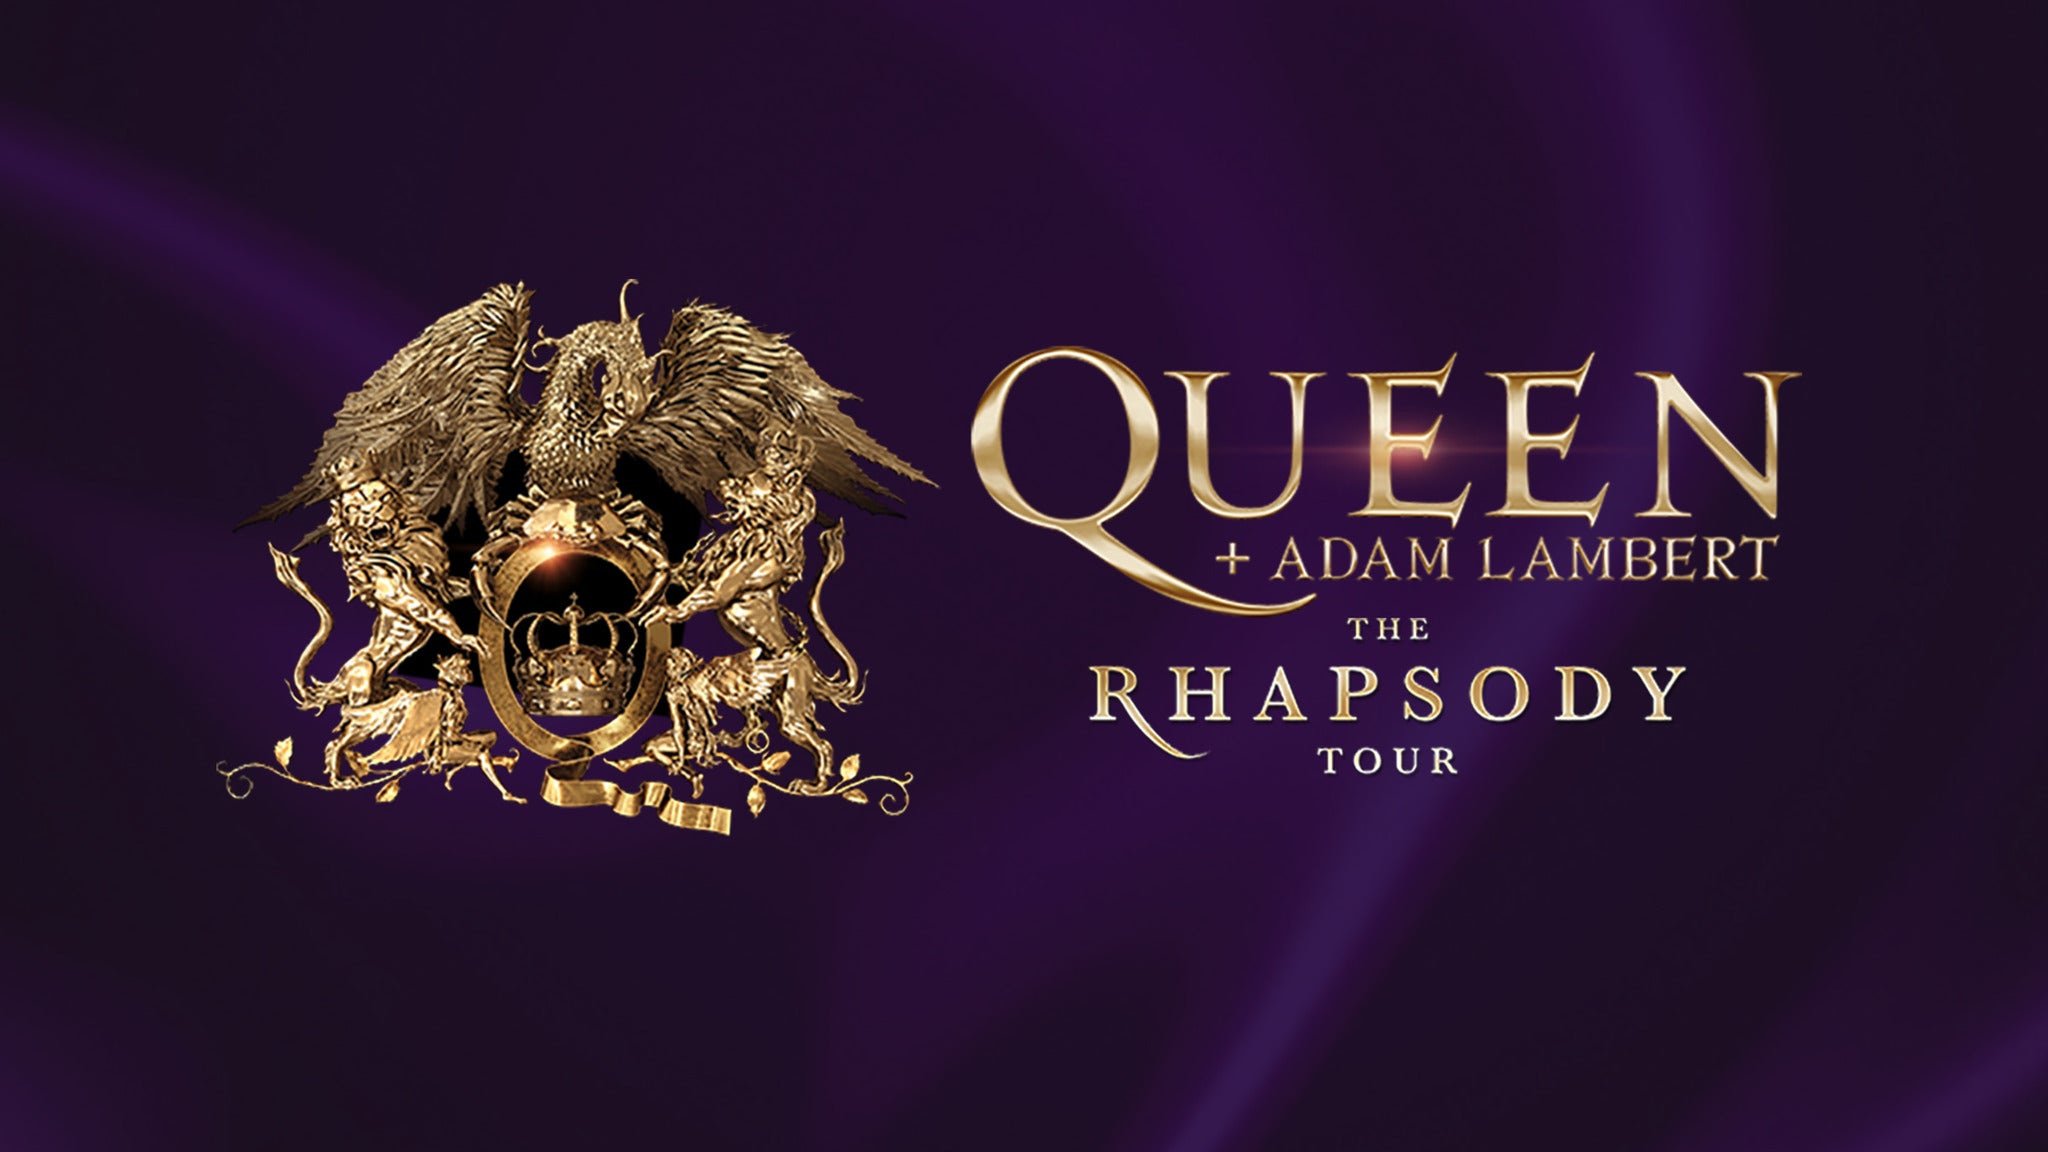 Queen + Adam Lambert - The Rhapsody Tour - WAITING LIST